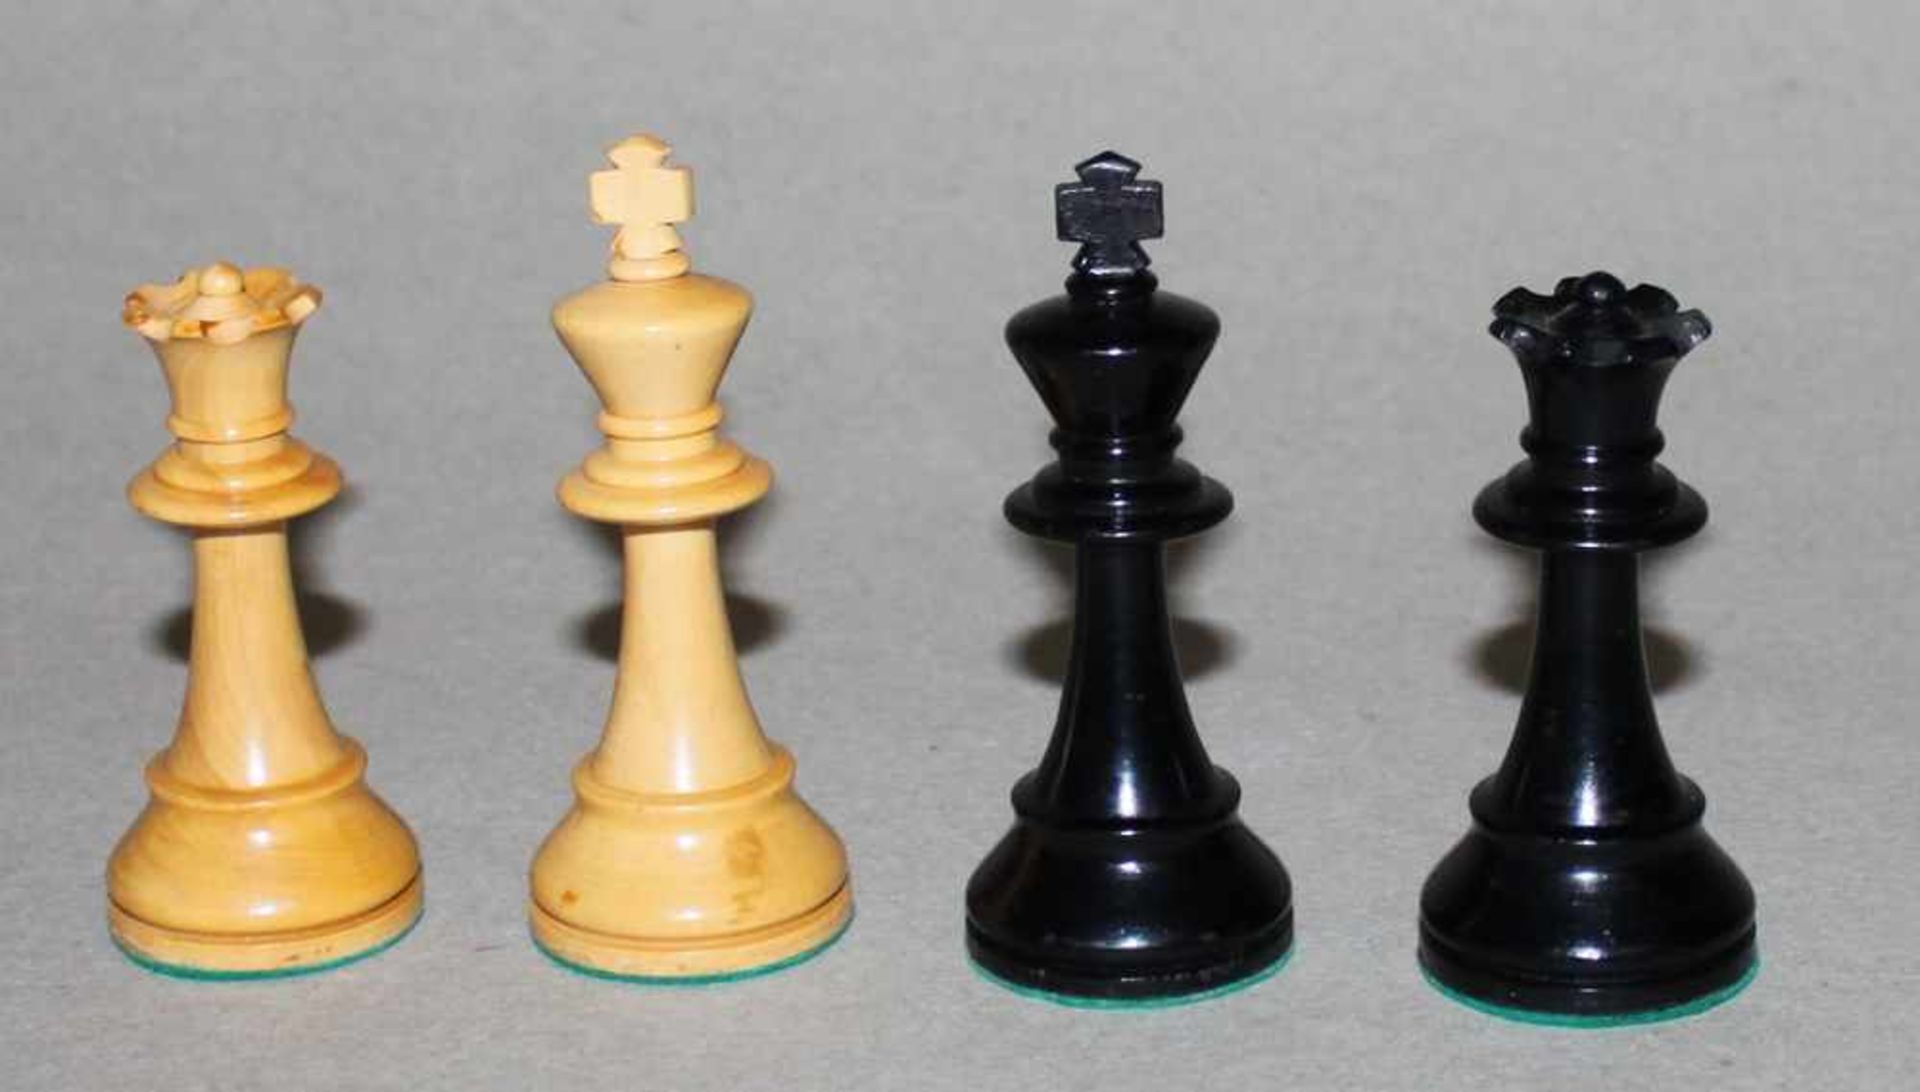 Europa. Zwei Staunton Schachspiele aus Holz.Eine Partei in schwarz, die andere naturfarben. - Bild 4 aus 6